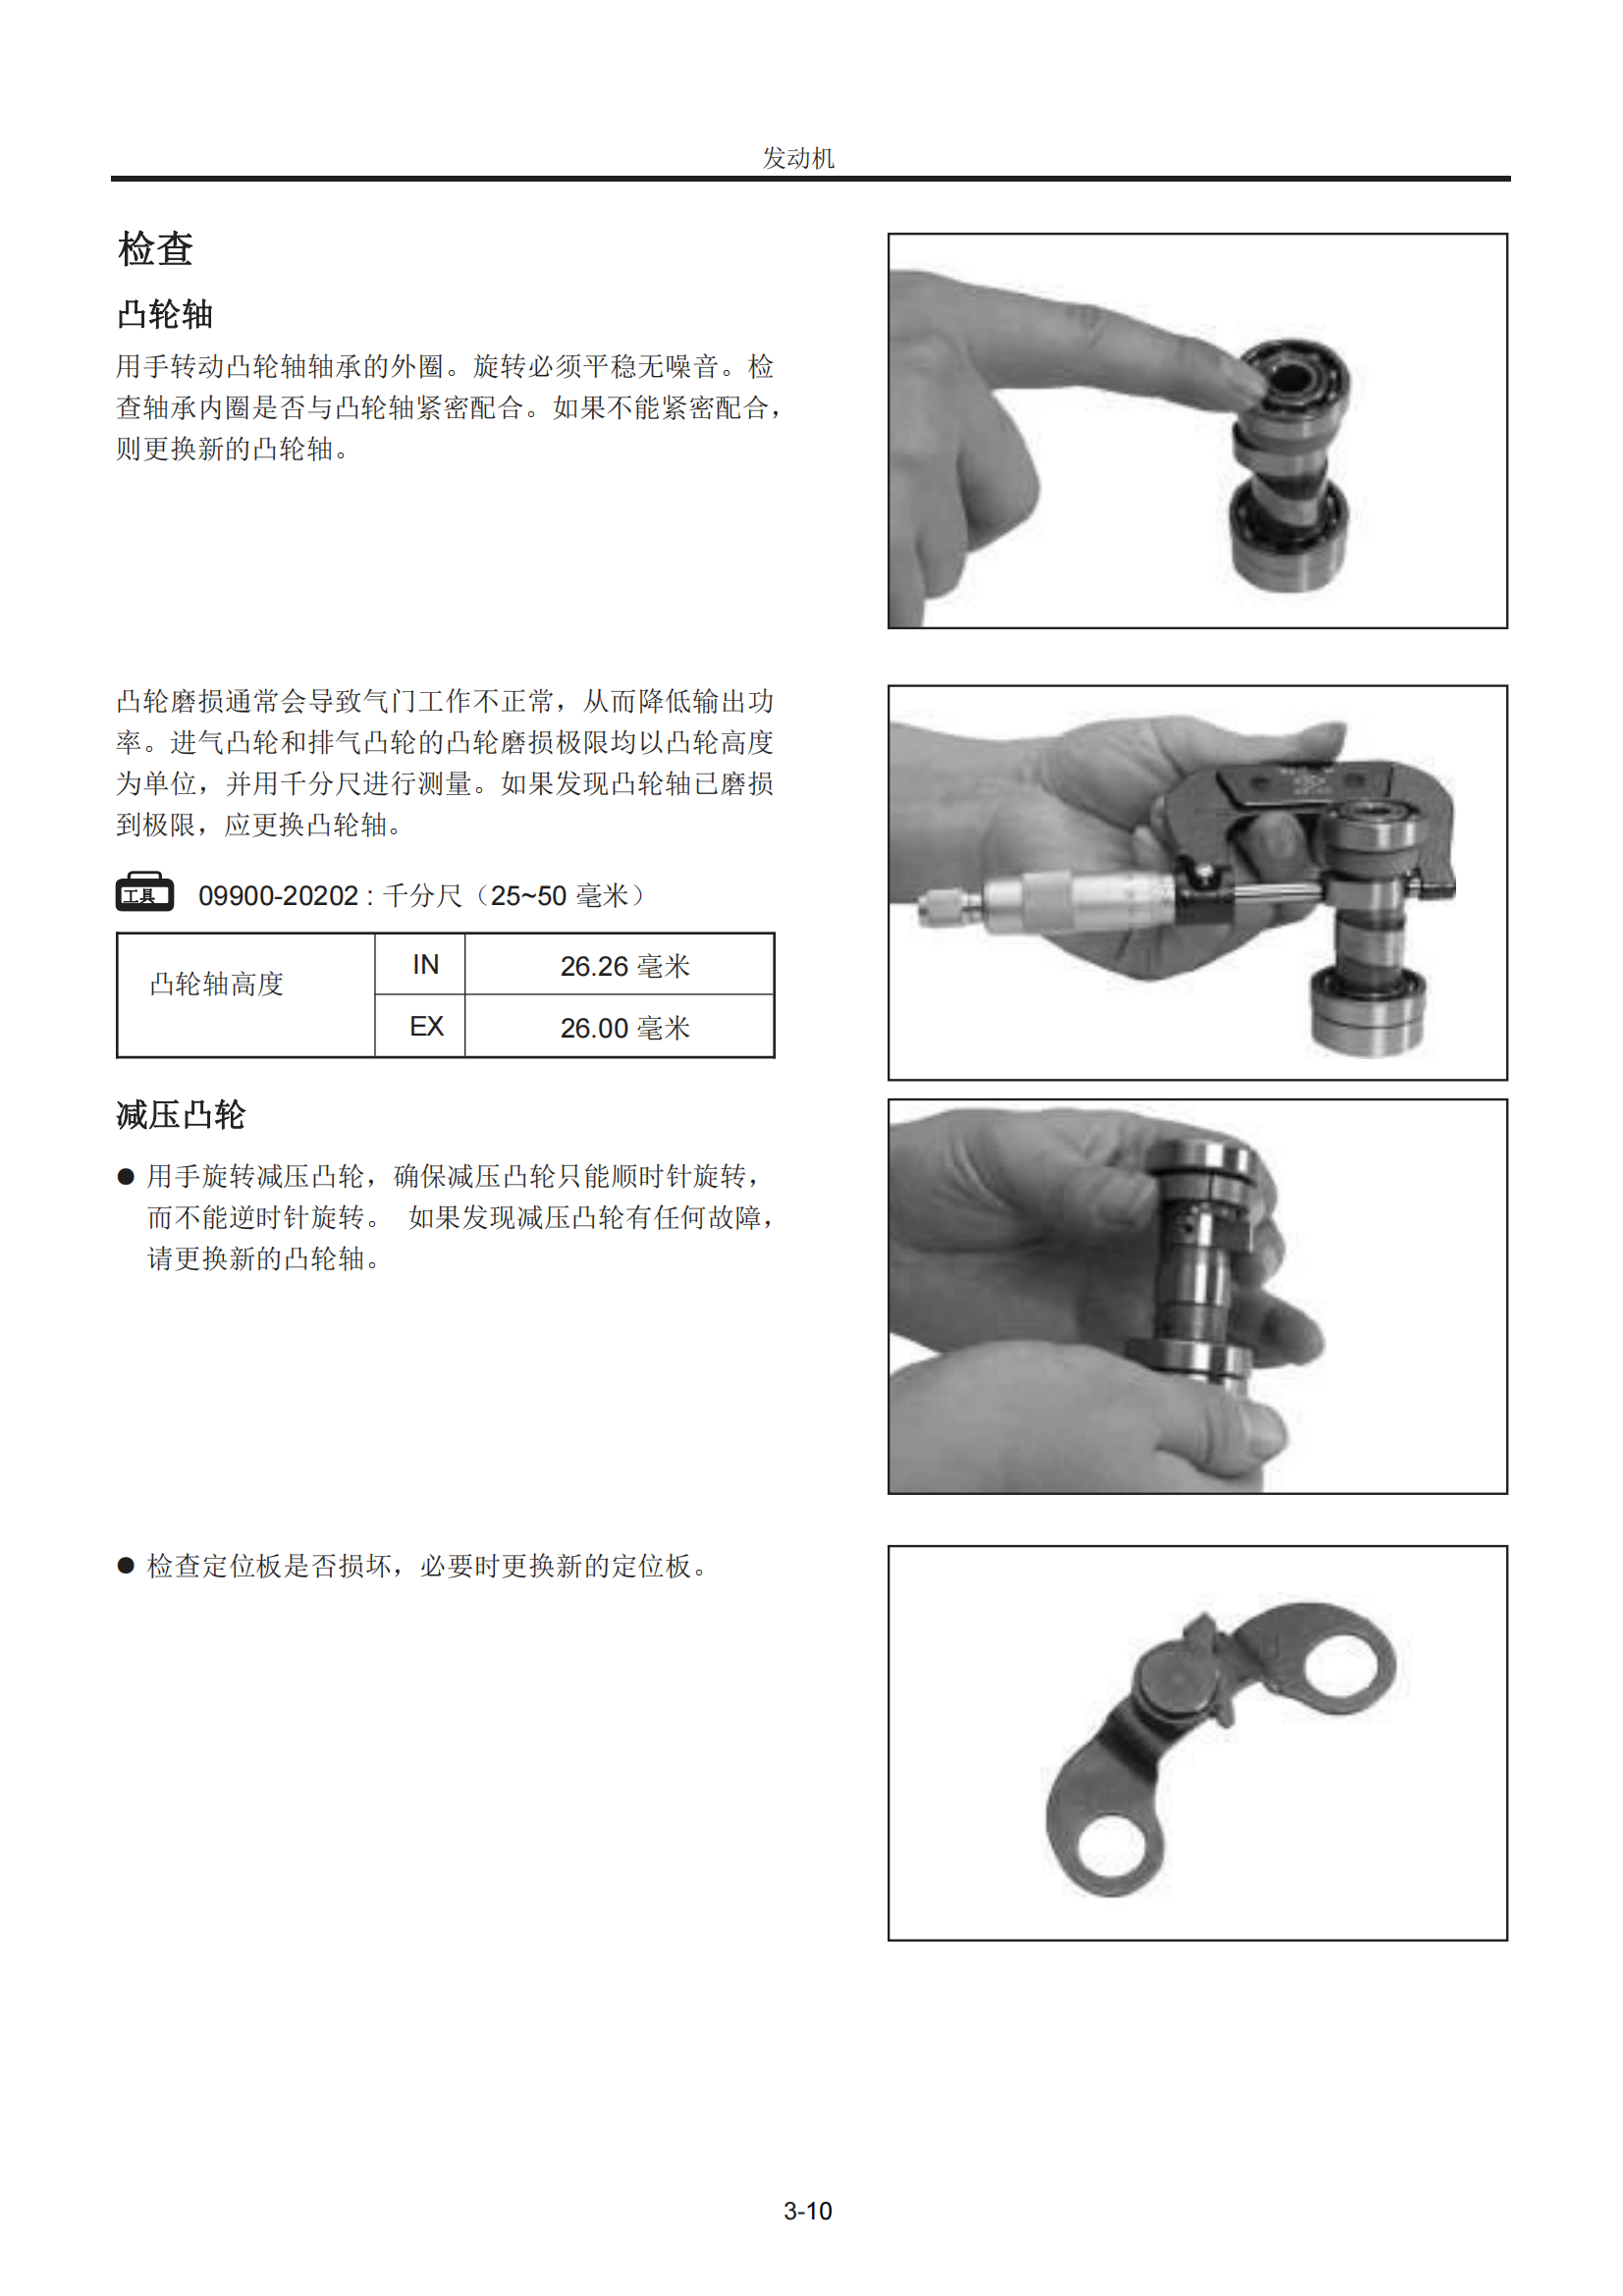 简体中文2008年豪爵HJ110-2 HJ110-2A维修手册插图3